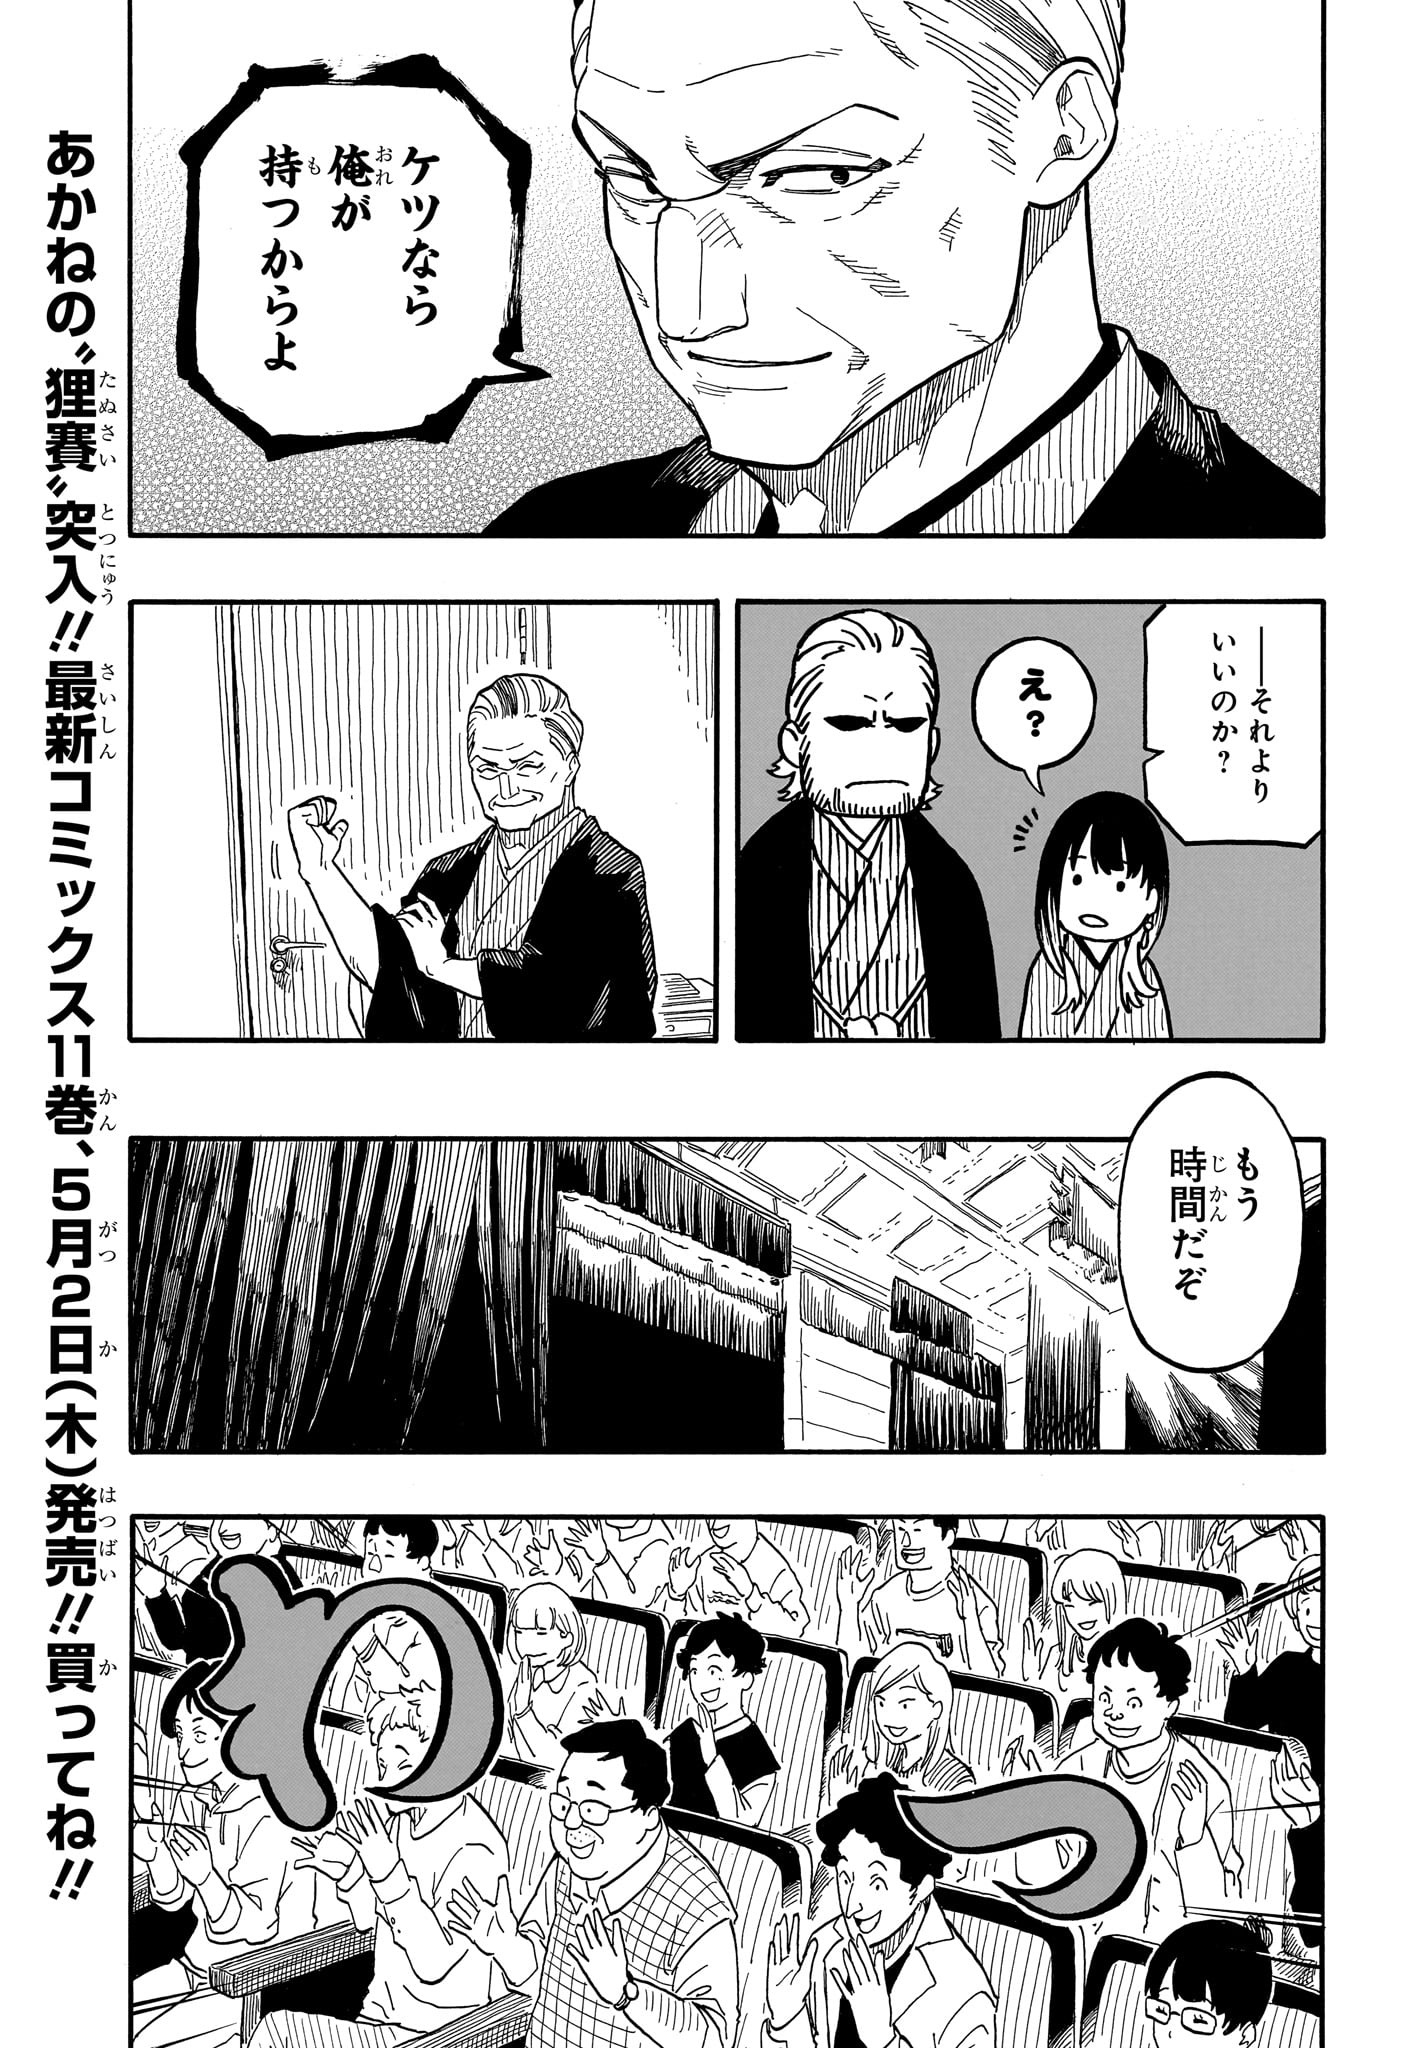 Akane-Banashi - Chapter 106 - Page 3